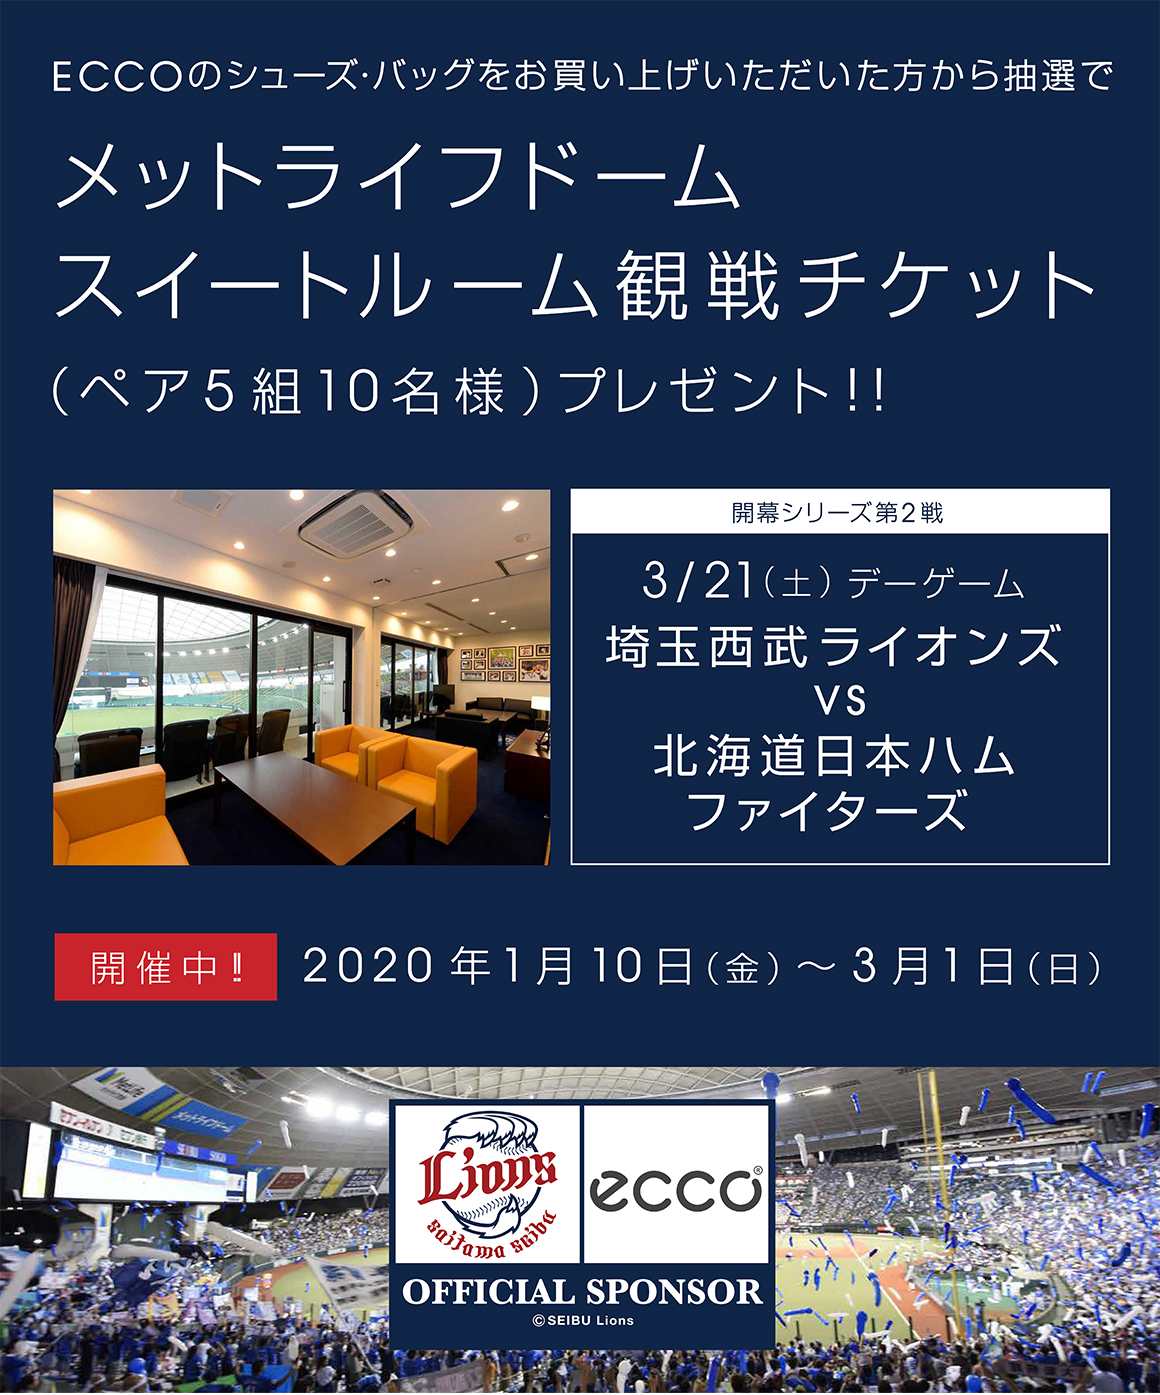 エコーを履いて埼玉西武ライオンズを応援しよう Ecco エコー ジャパン公式オンラインストア